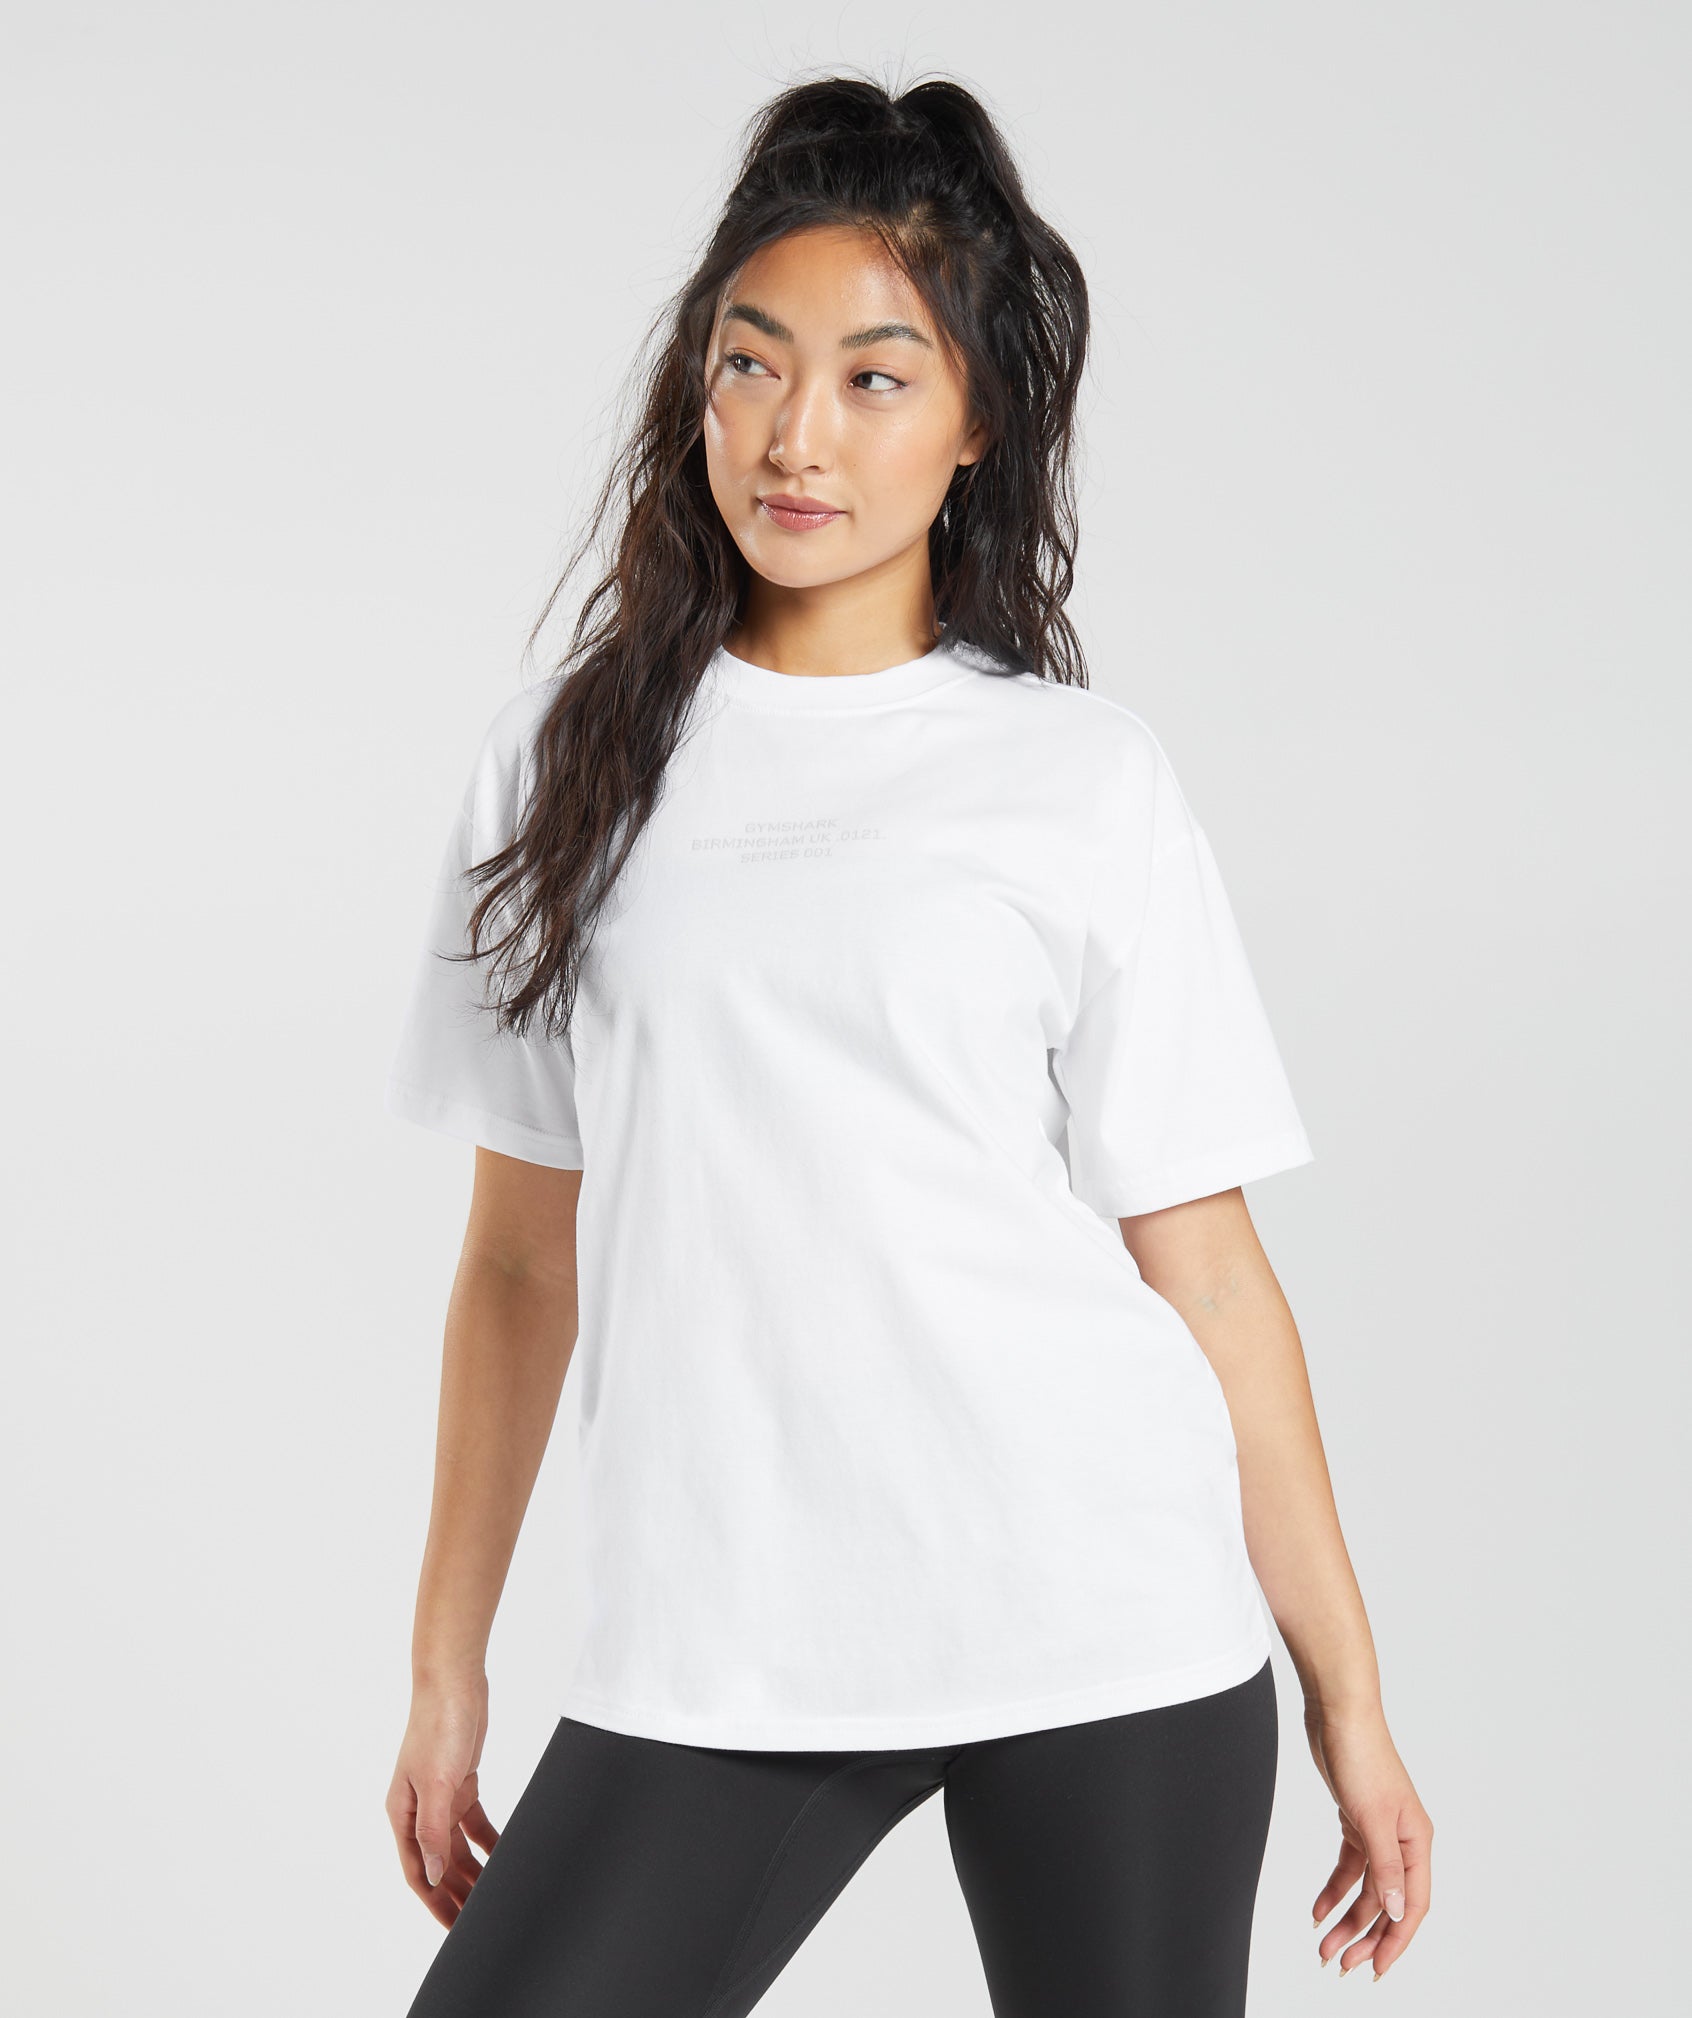 Gymshark White T-Shirt